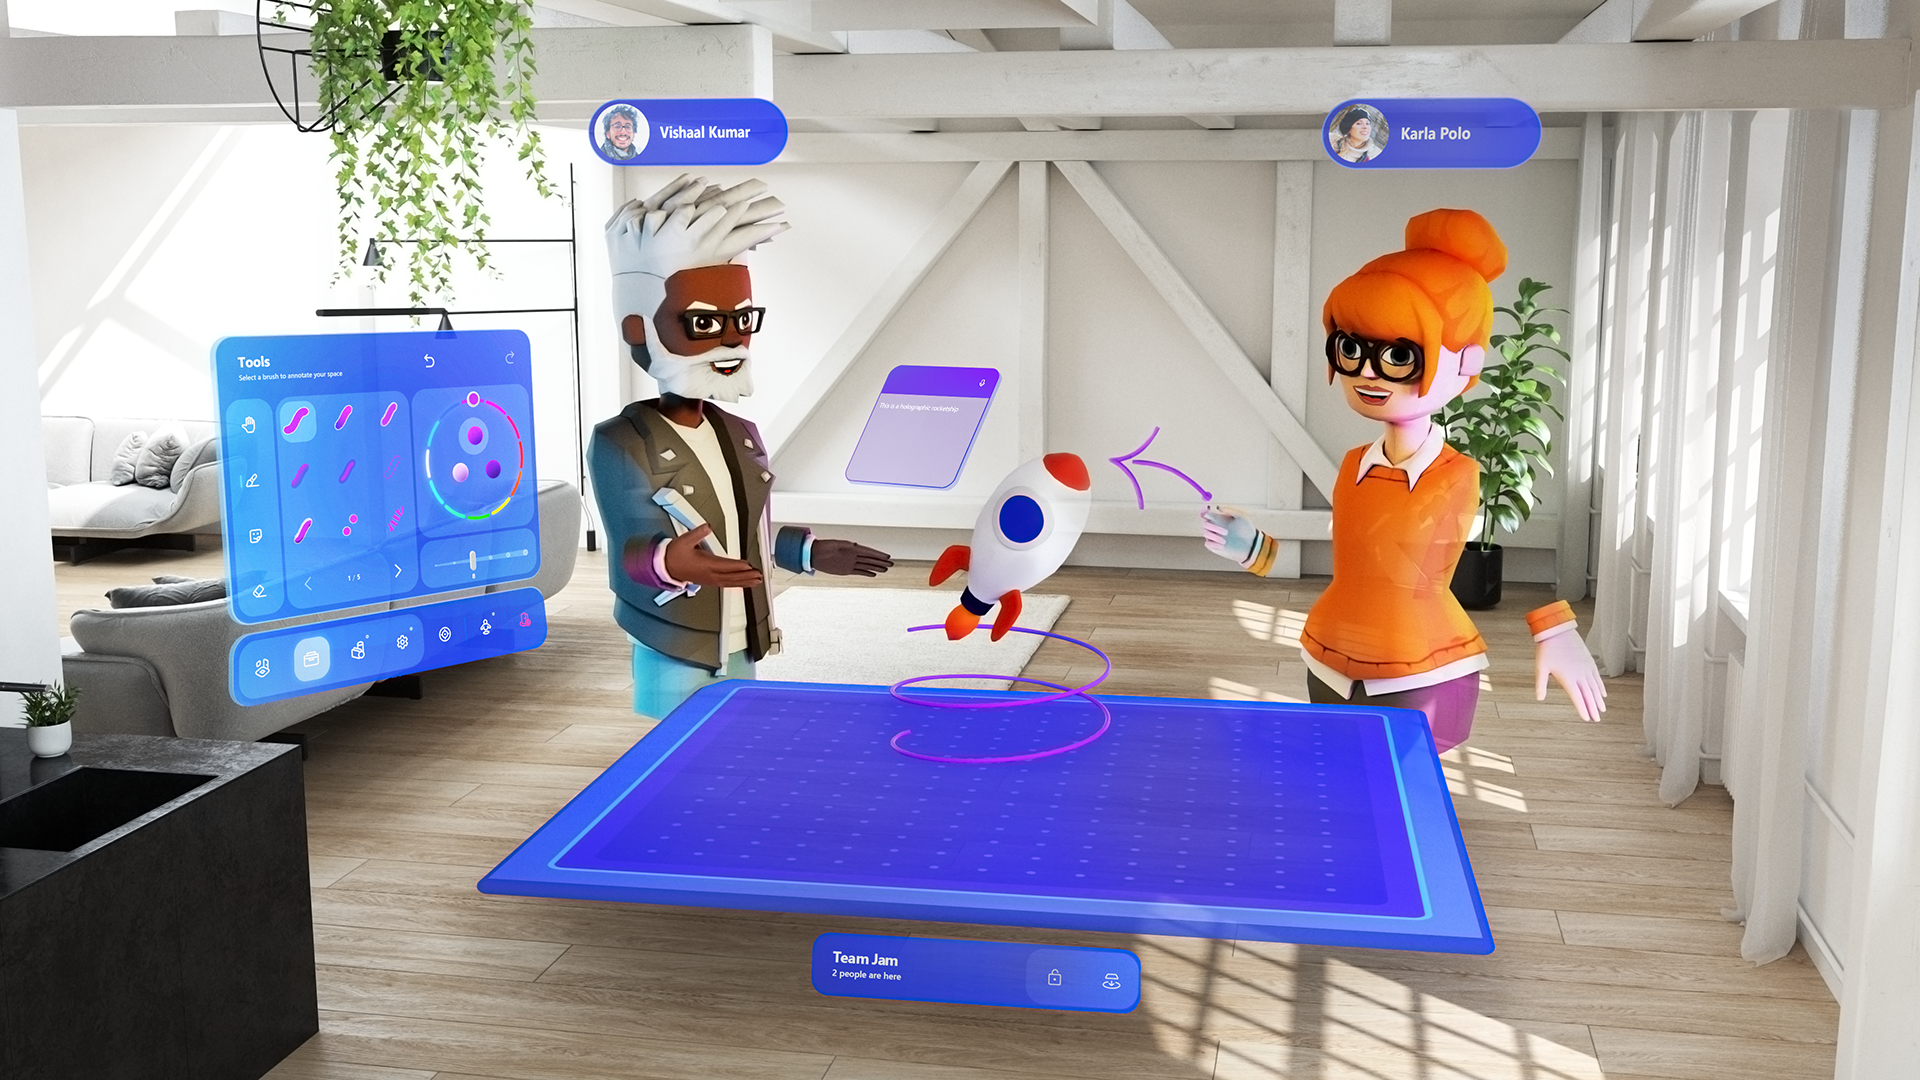 Das Bild zeigt, wie zwei virtuelle Avatare in einem virtuellen Raum miteinander arbeiten. Sie haben auf einem virtuellen Tisch eine Rakete, über die sie gerade sprechen. 